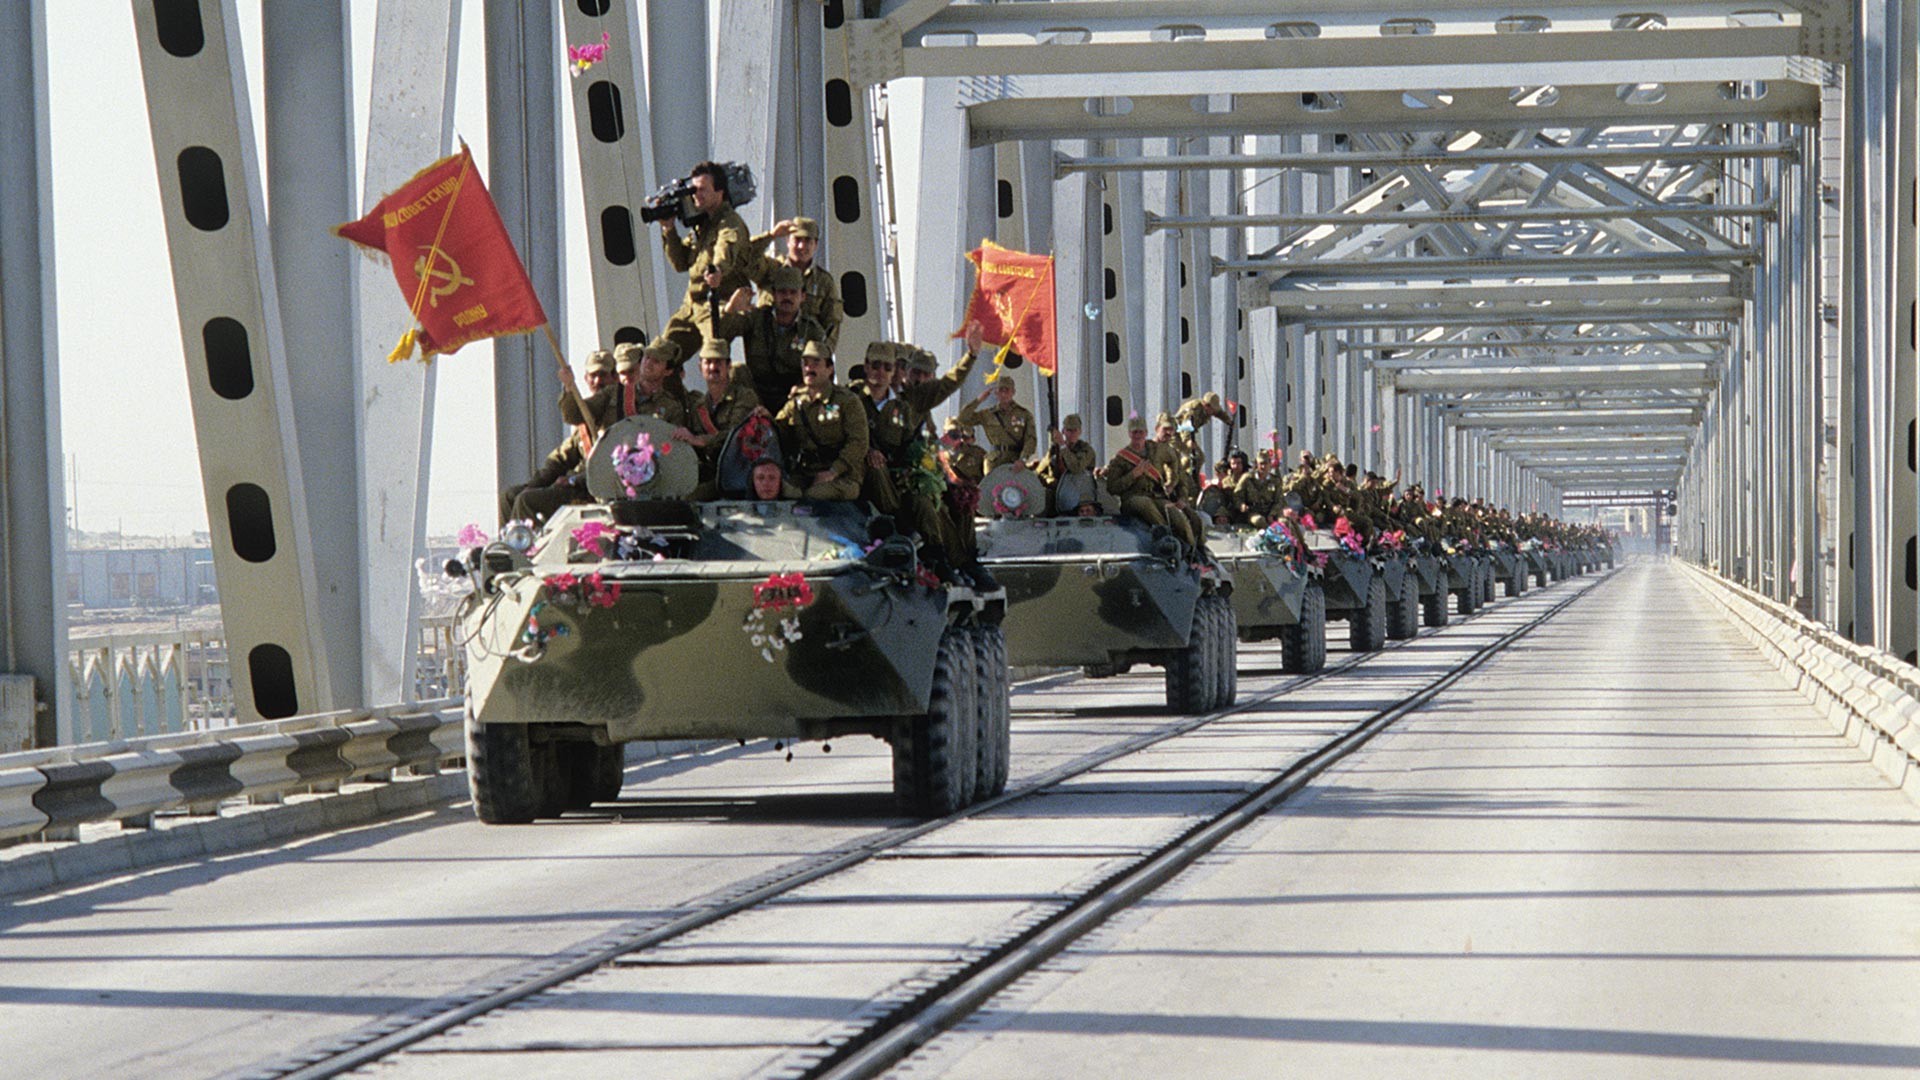 Съветската колона напуска Афганистан, преминавайки границата - моста 